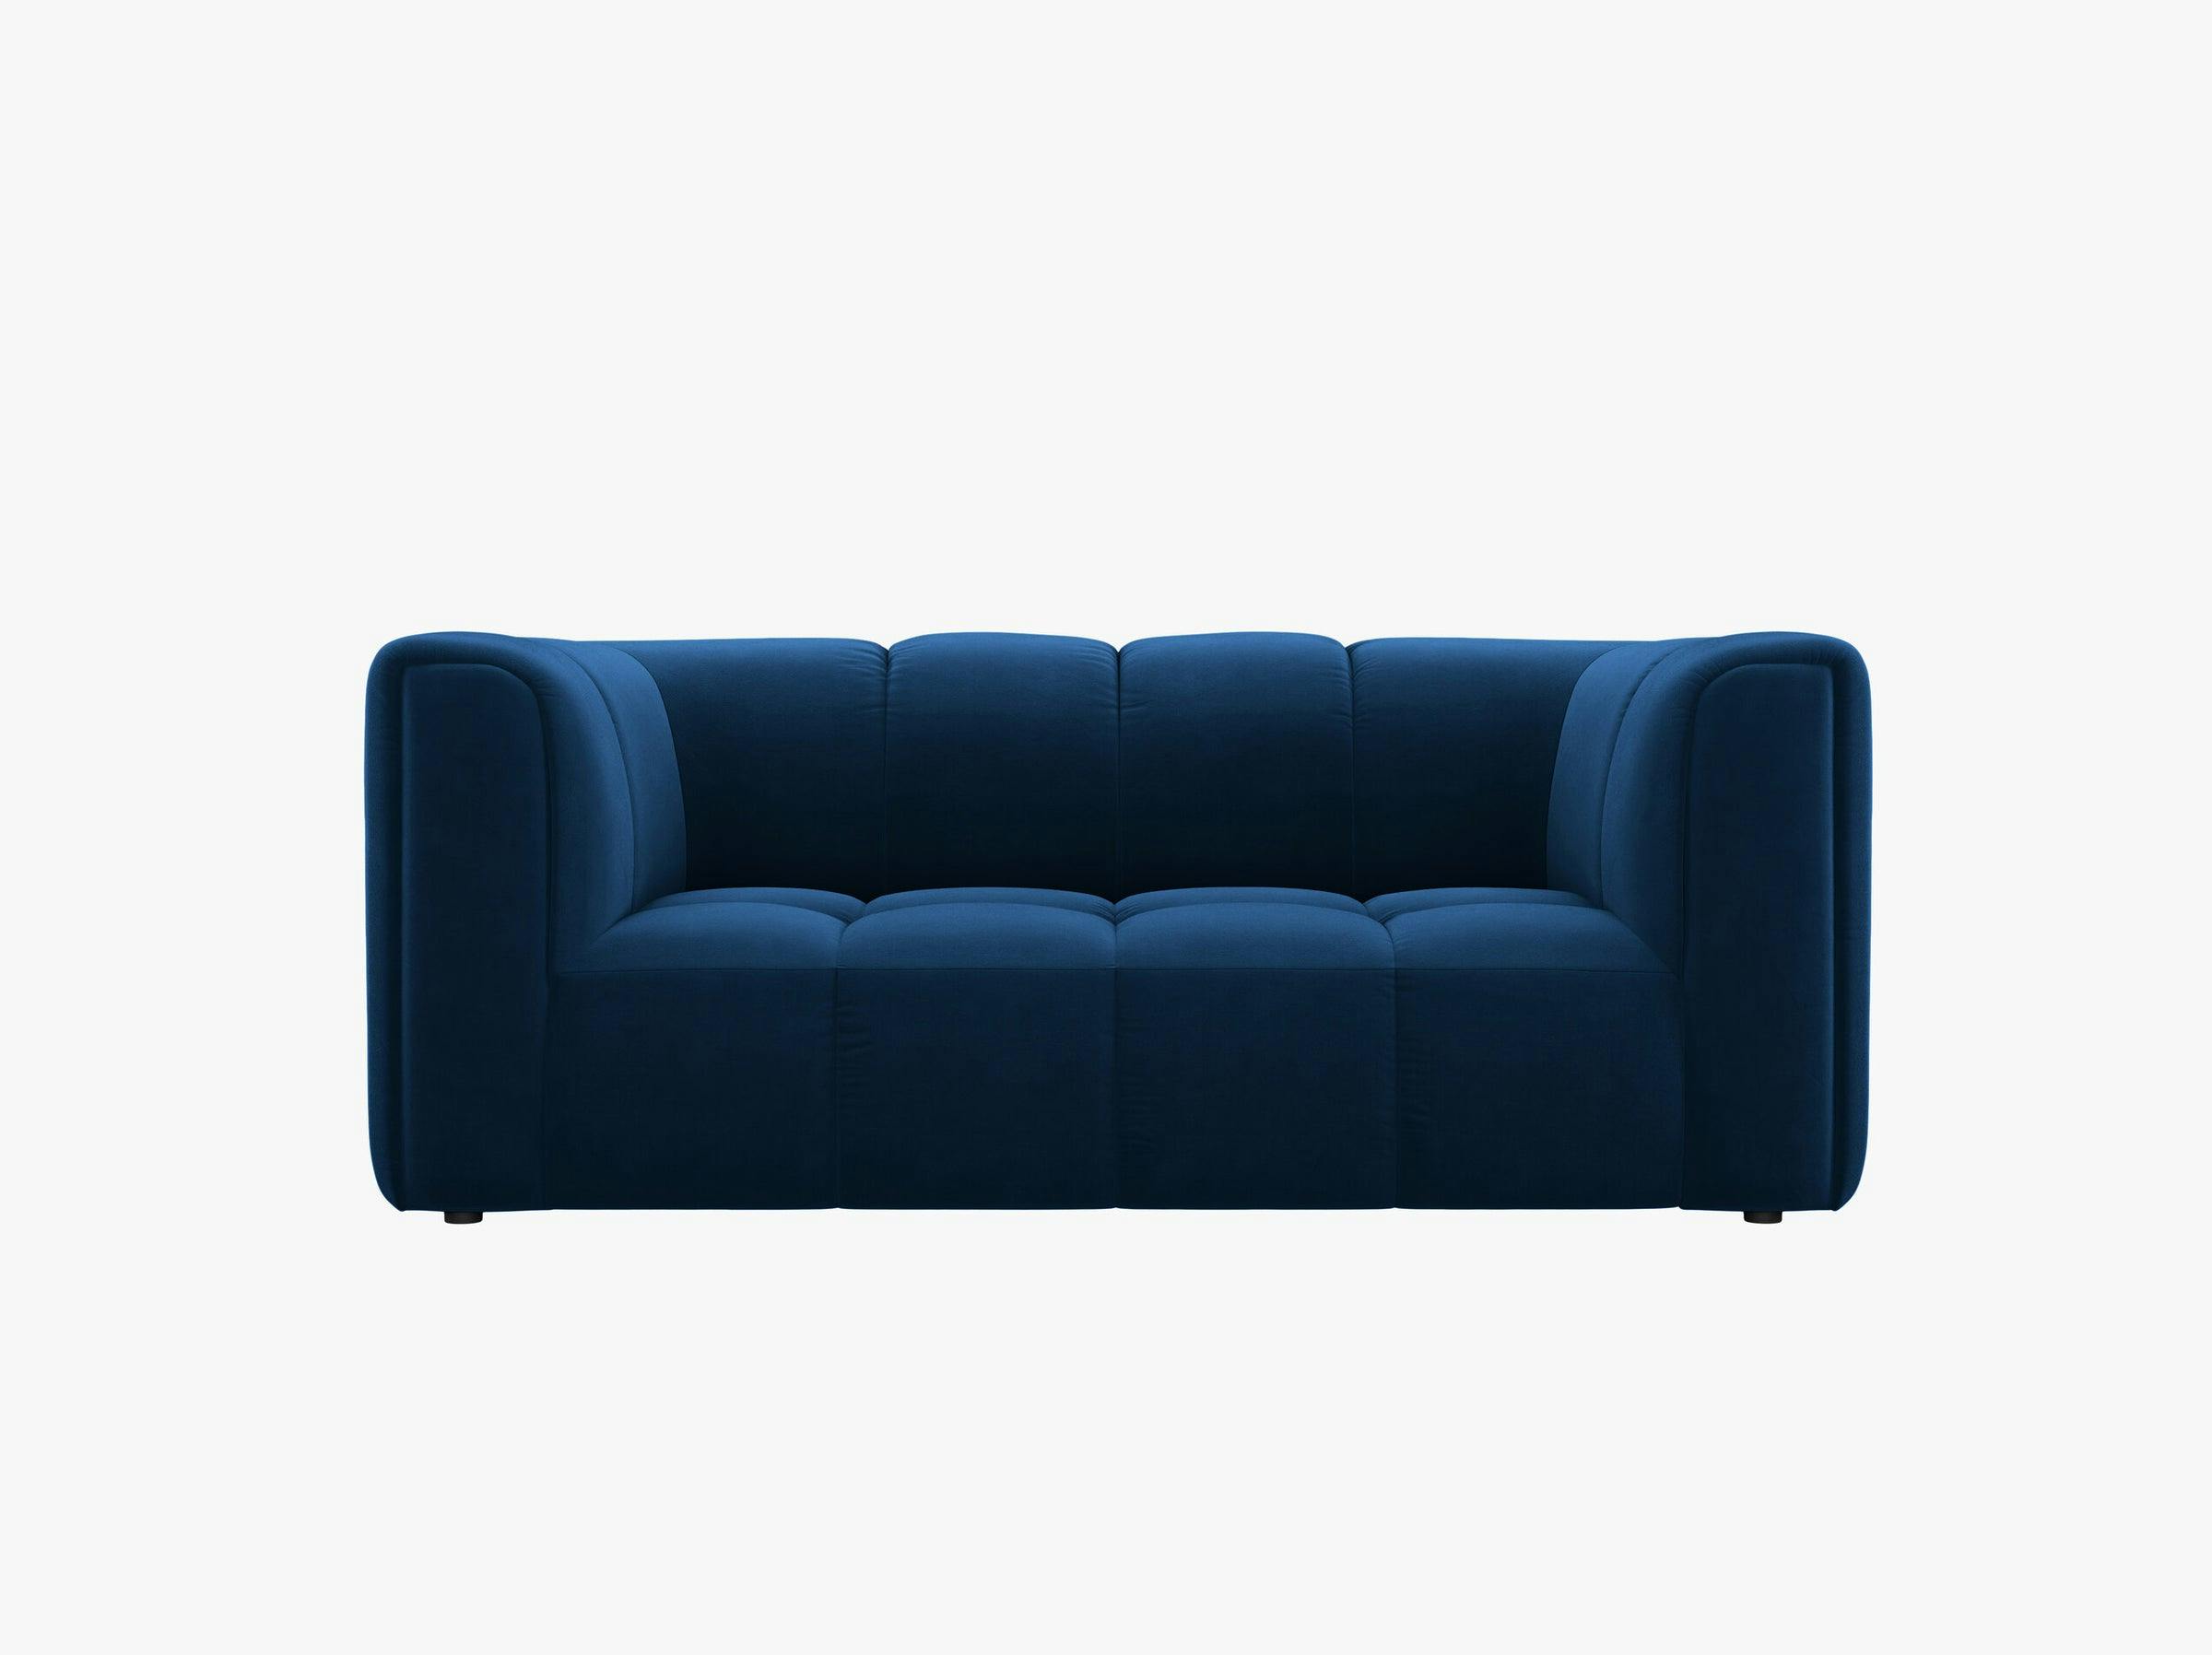 Serena sofas velvet royal blue